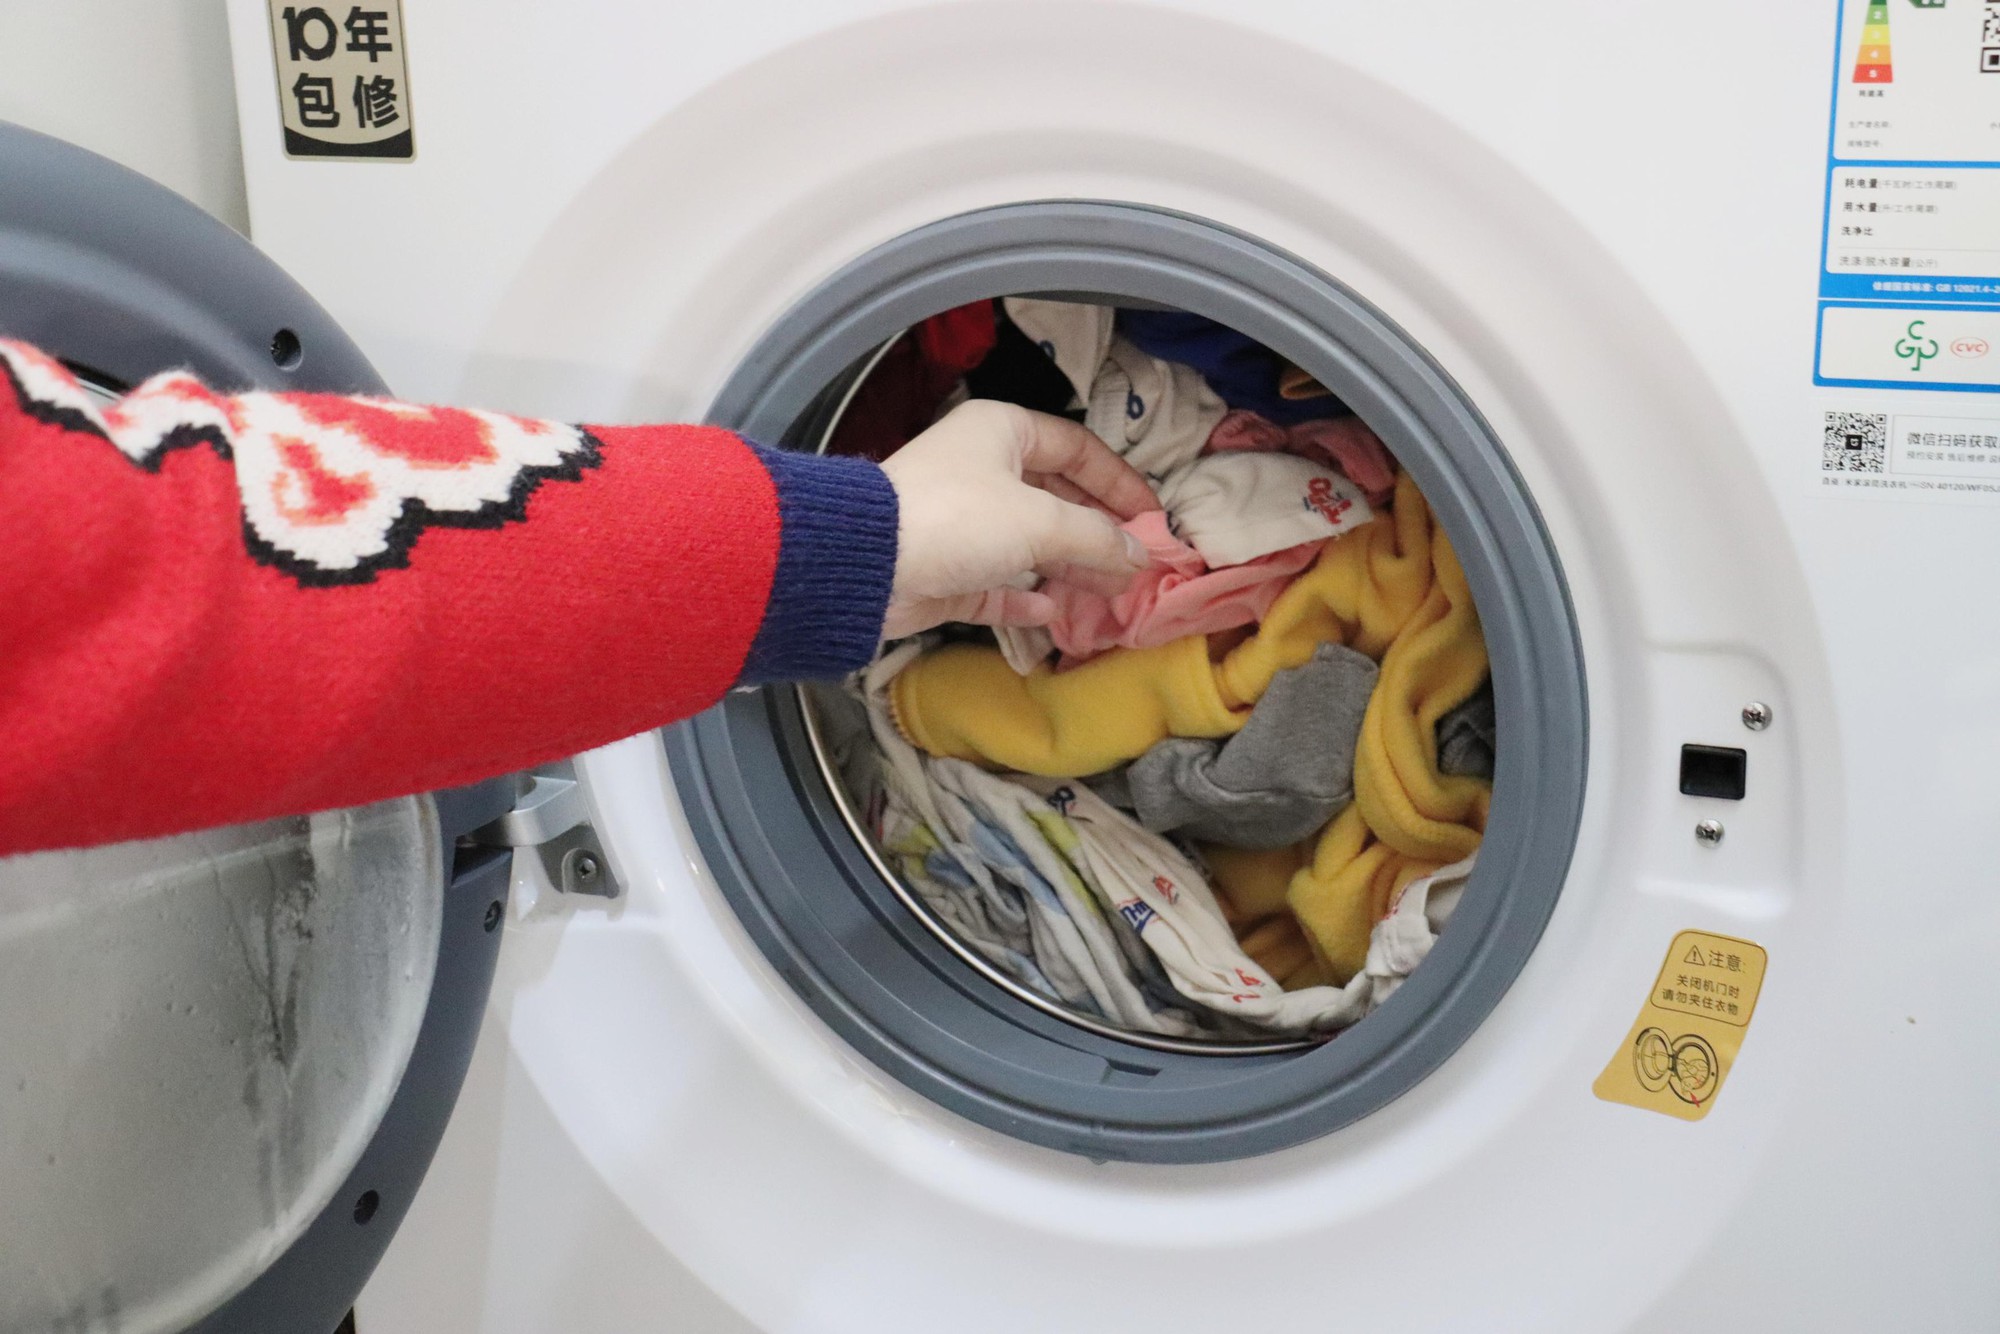 Chữ “KG” trên máy giặt chỉ trọng lượng quần áo khô hay quần áo ướt? Rất nhiều người đã nhầm- Ảnh 2.